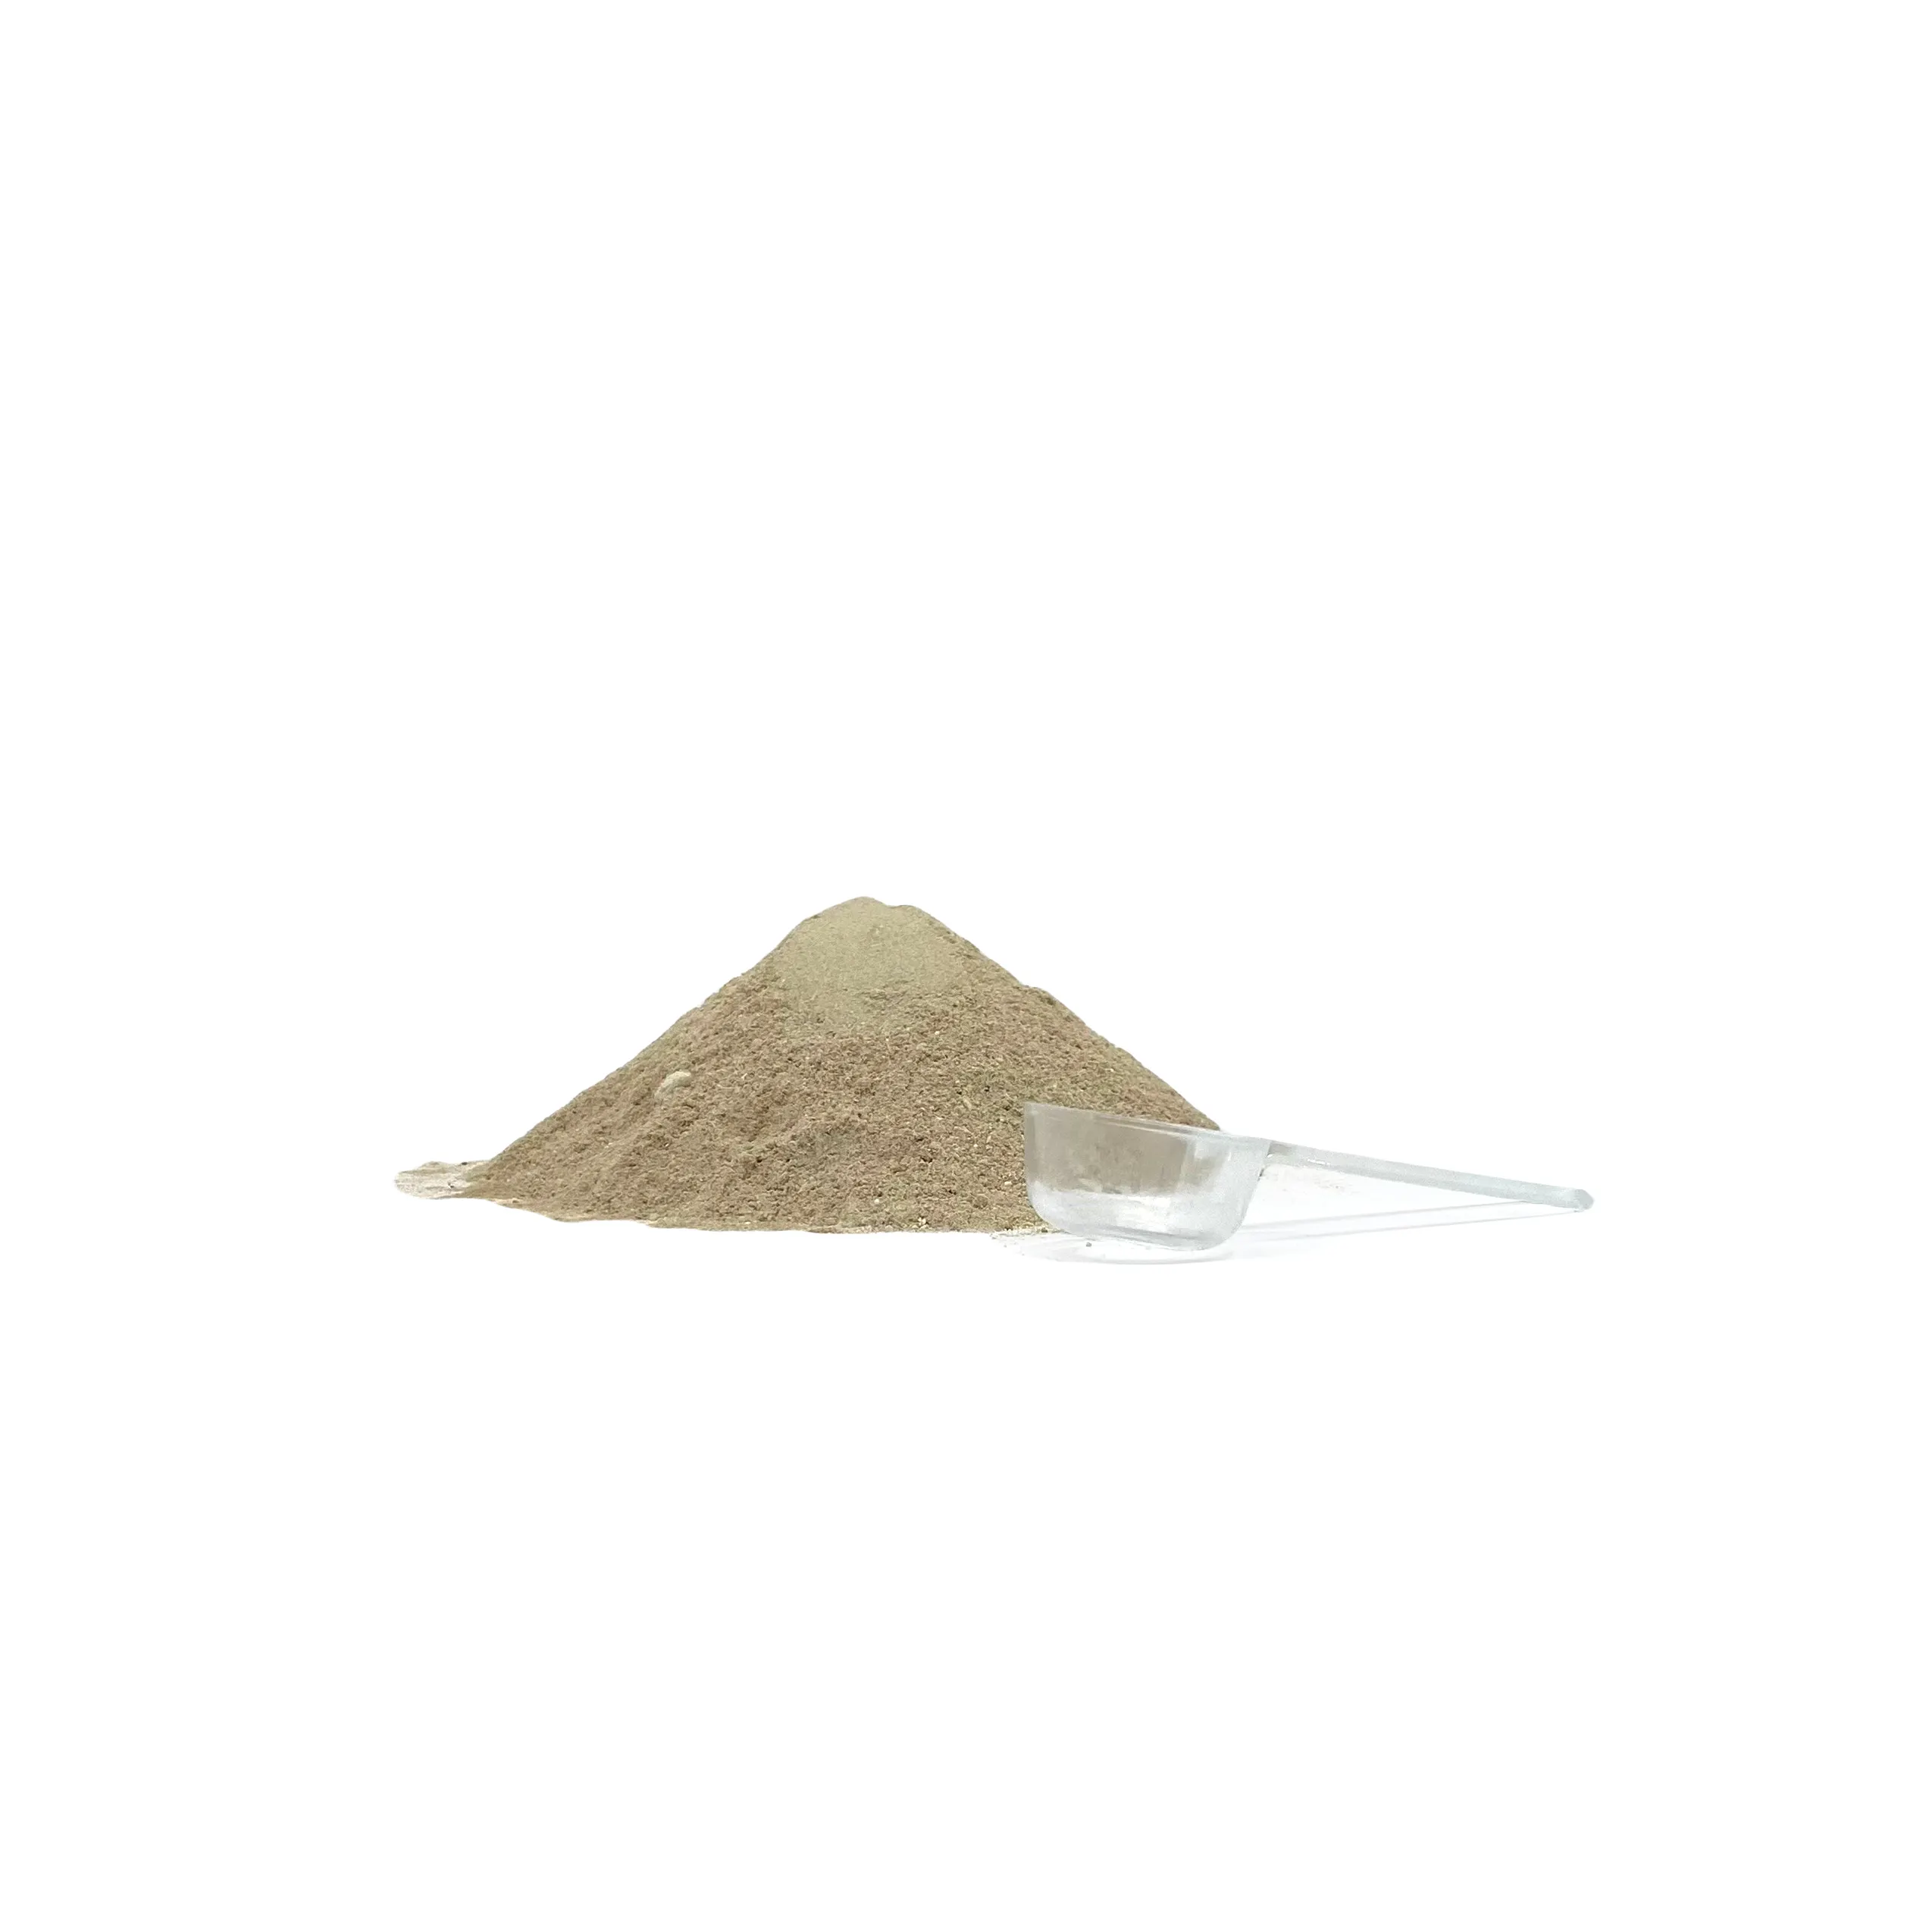 תוסף מרכיבים טבעיים באיכות מעולה אבקת טיפוח מפרקים בצנצנת עם כוס מדידה לייצוא